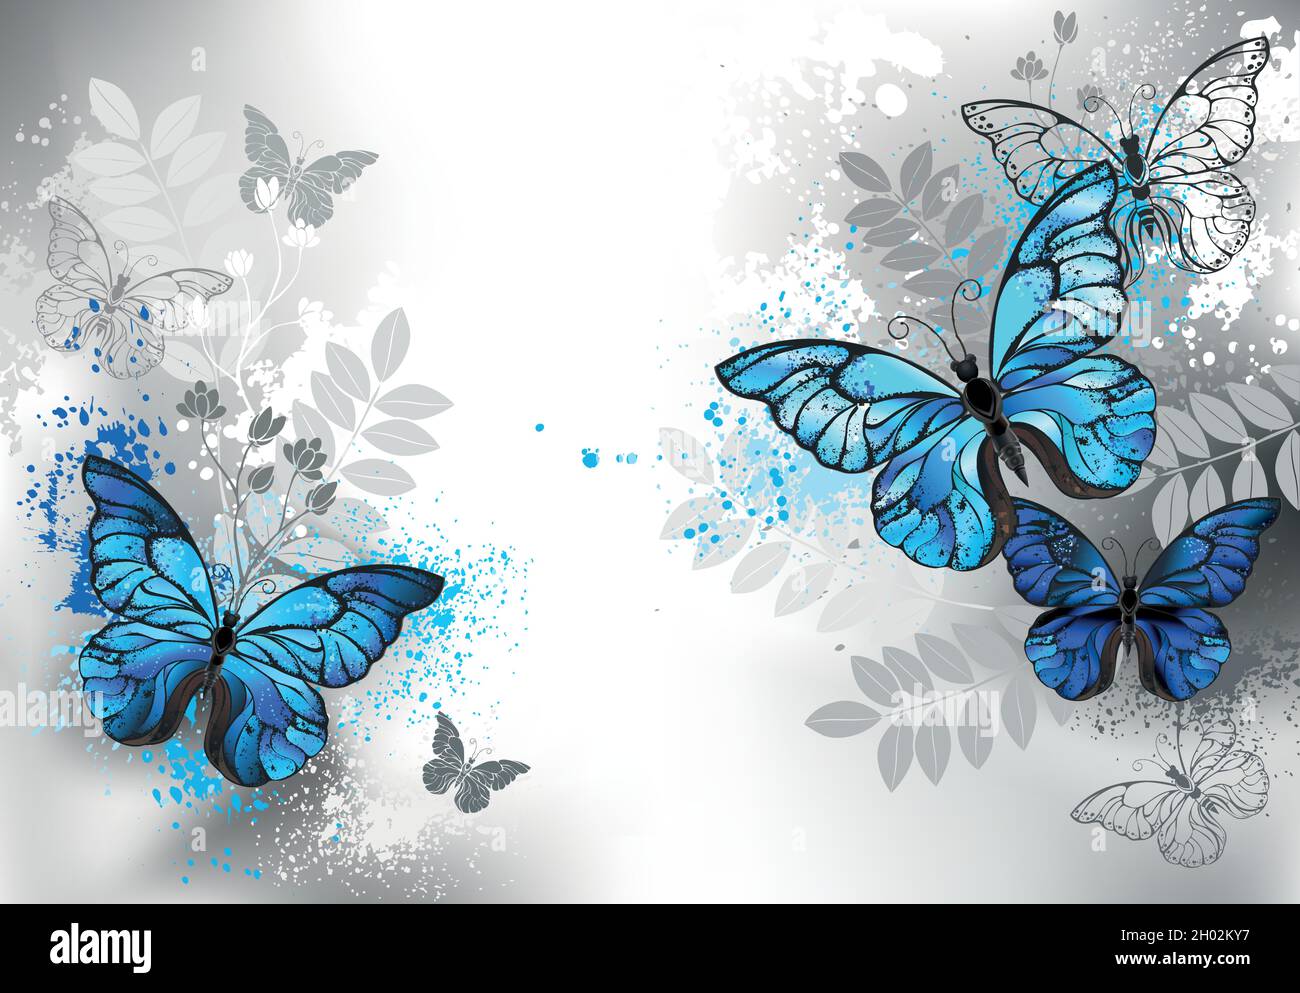 Composición de detalladas mariposas morfo azules, decoradas con gotas de pintura azul con plantas silvestres silueta sobre fondo gris. Ilustración del Vector